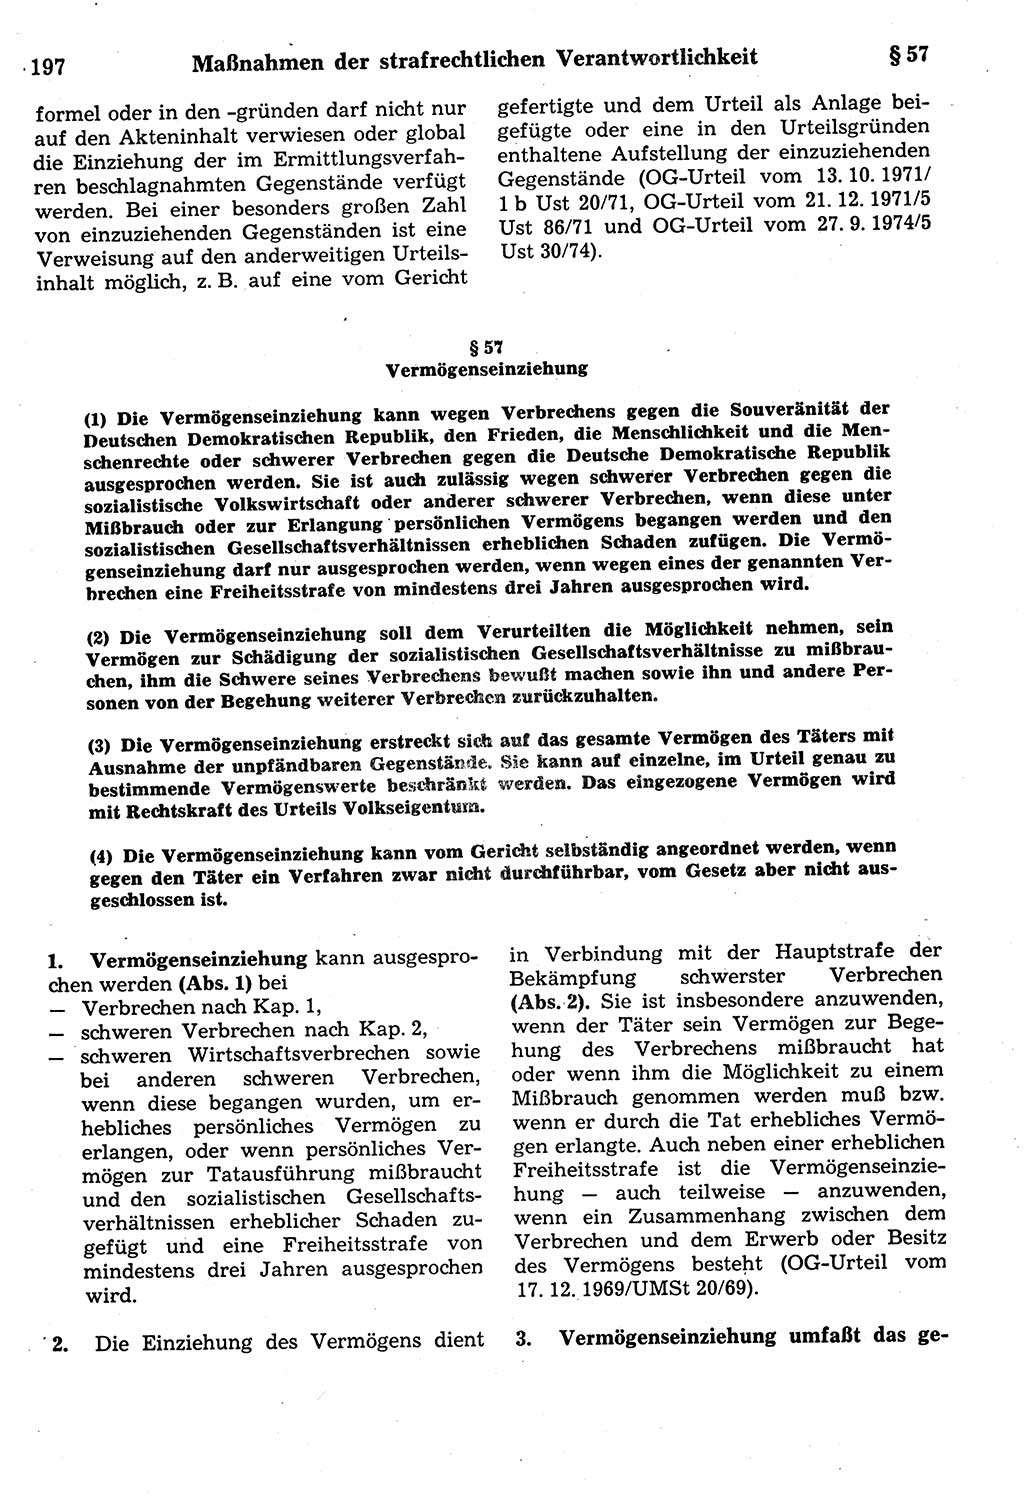 Strafrecht der Deutschen Demokratischen Republik (DDR), Kommentar zum Strafgesetzbuch (StGB) 1987, Seite 197 (Strafr. DDR Komm. StGB 1987, S. 197)